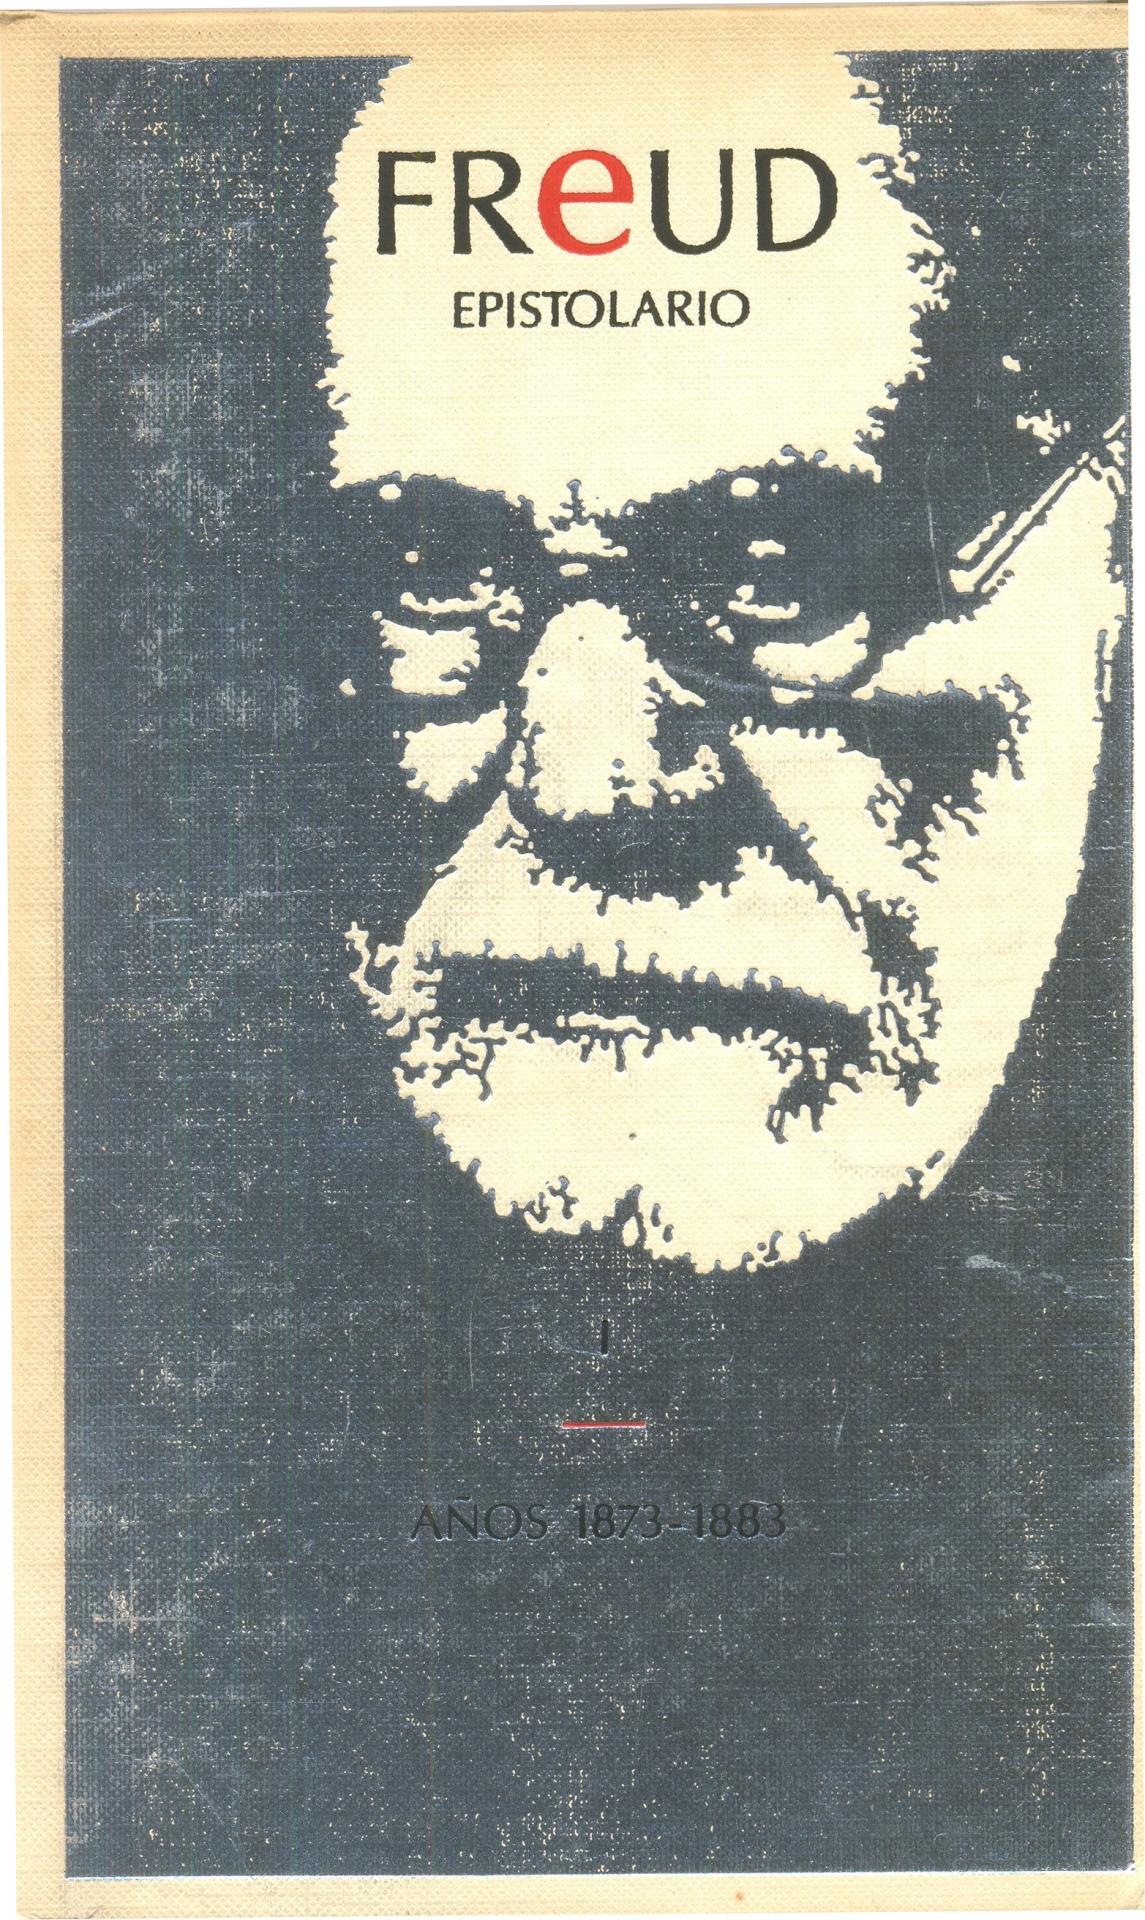 EPISTOLARIO. Años 1873-1883. Freud, S.